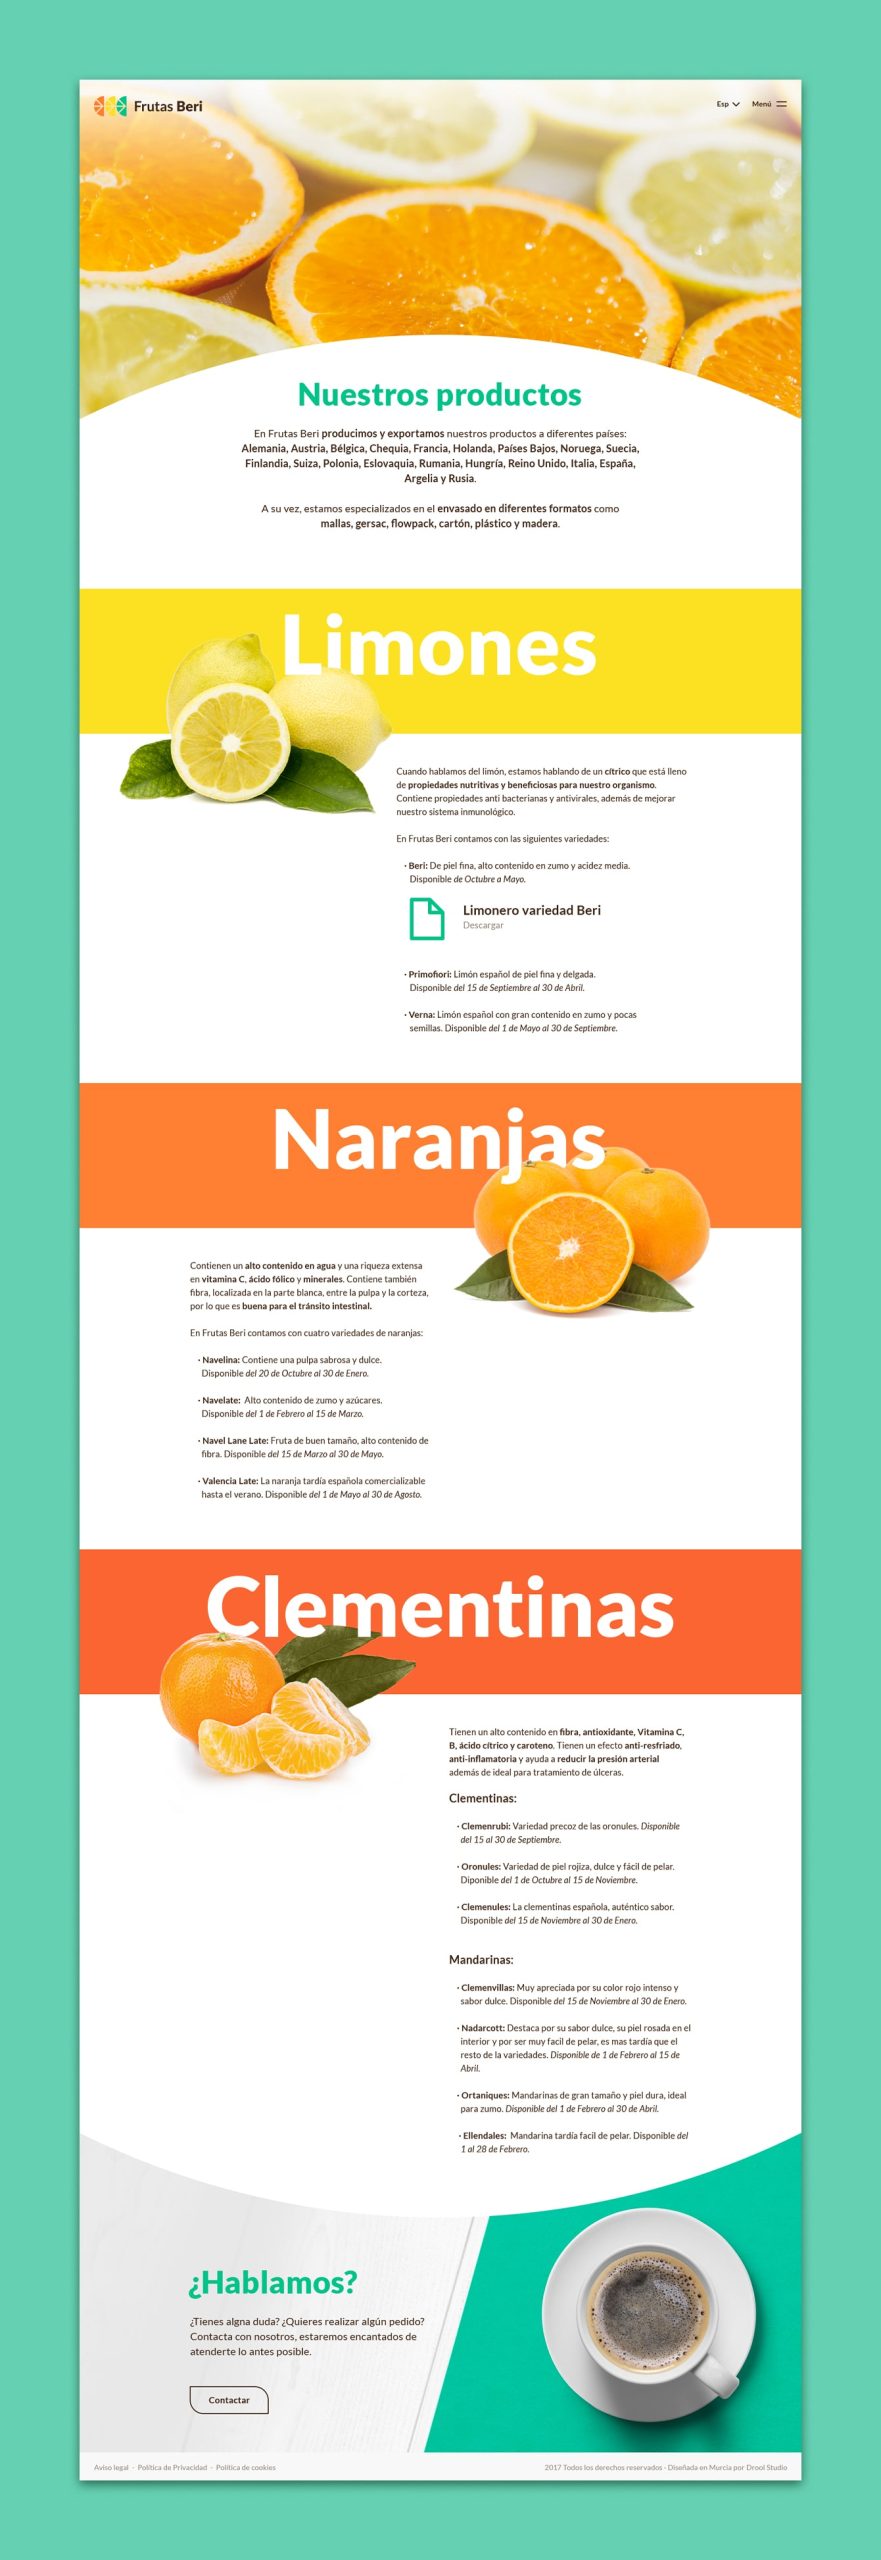 Diseño web realizado para Frutas Beri